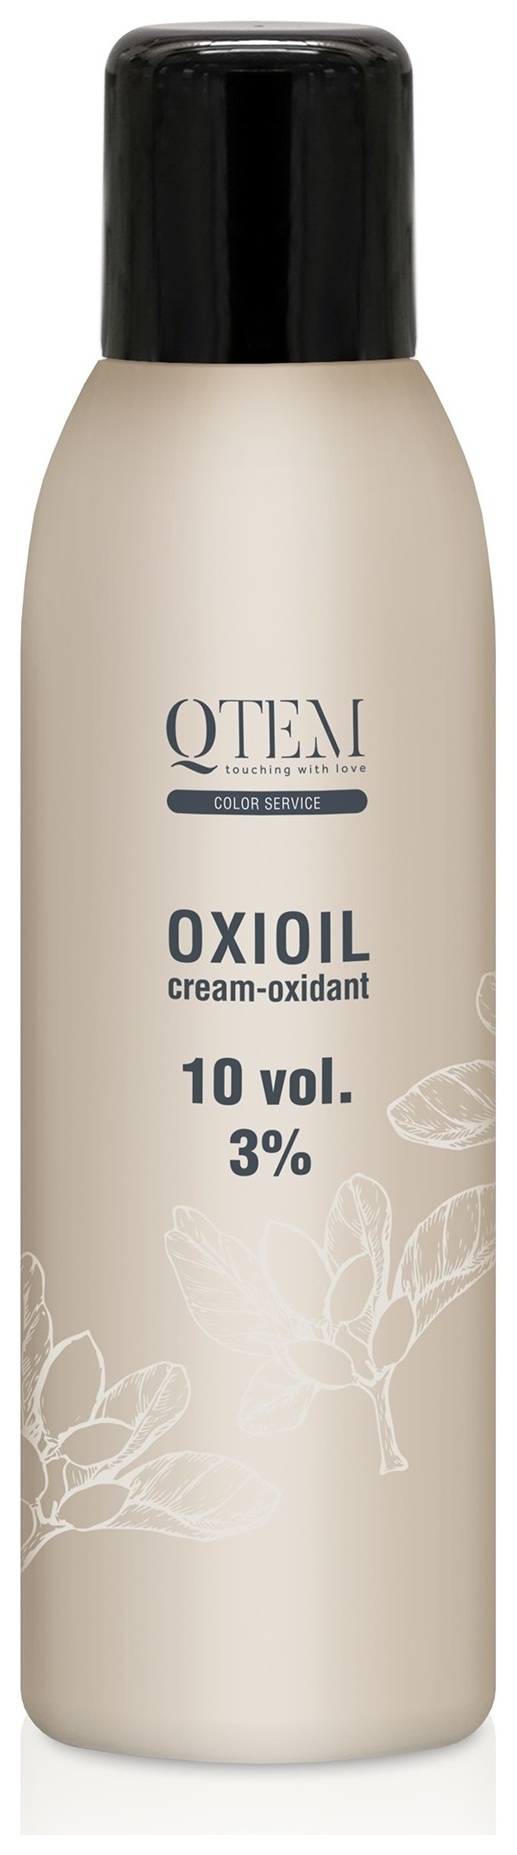 Универсальный крем-оксидант Oxioil 3% 10 Vol.